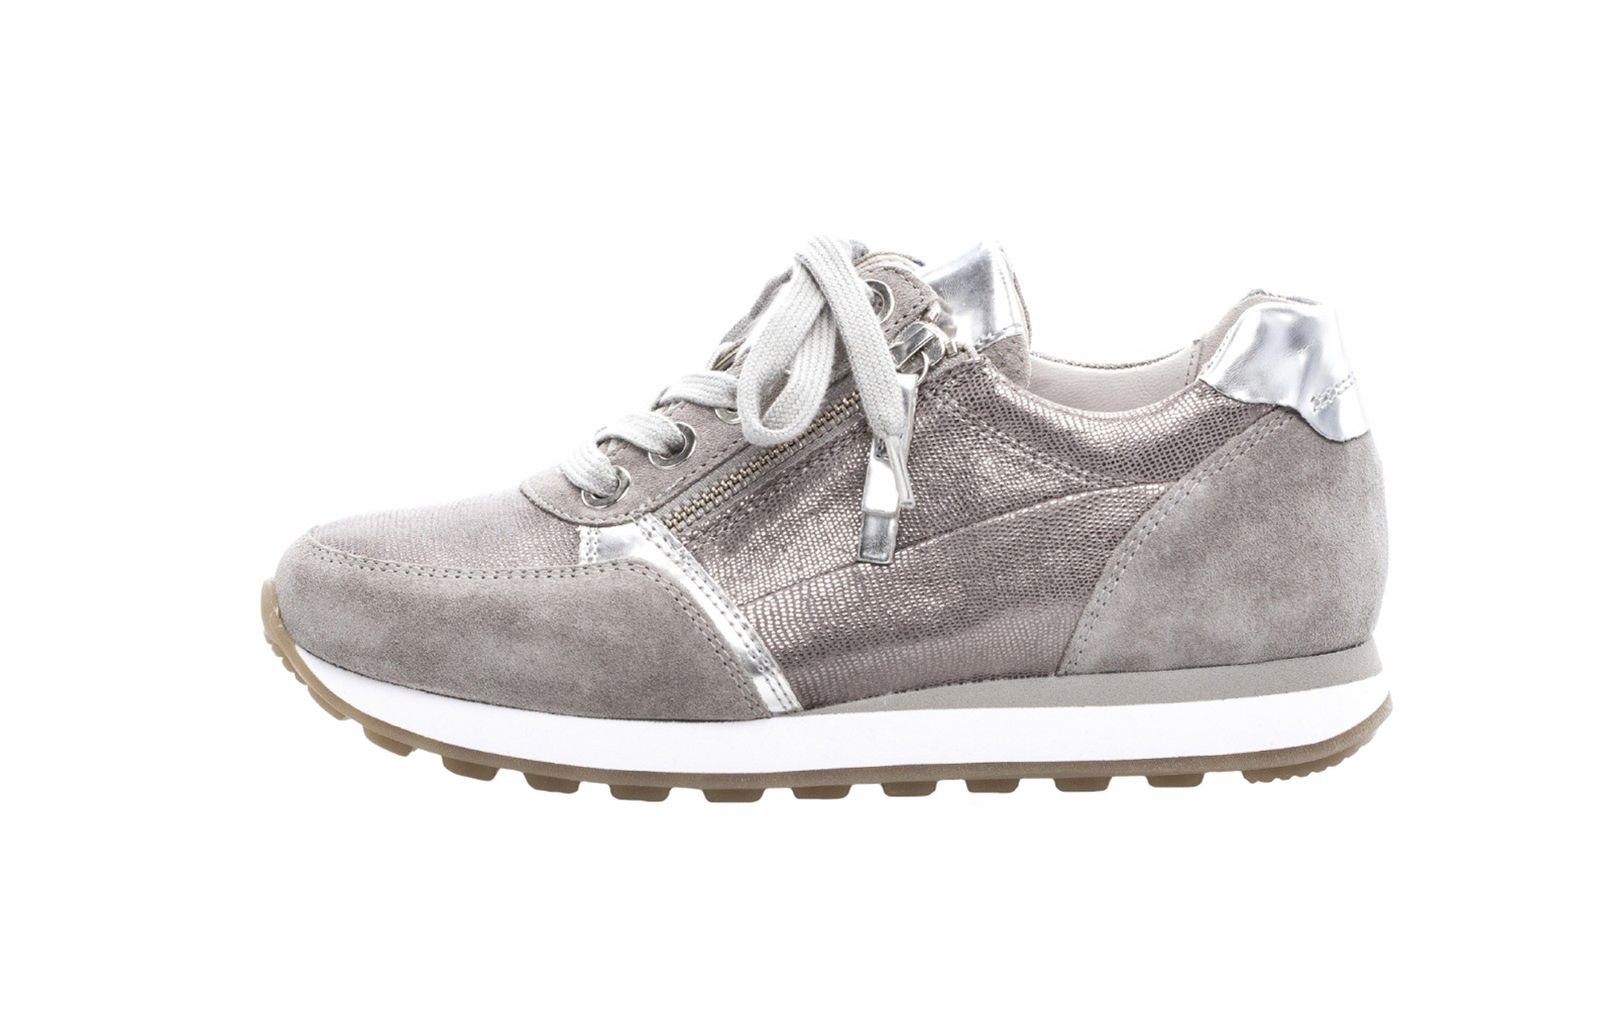 Verfrissend ras Collega Gabor Gabor Comfort Damen Sneaker 86.335.40 grau argento Schnürschuh